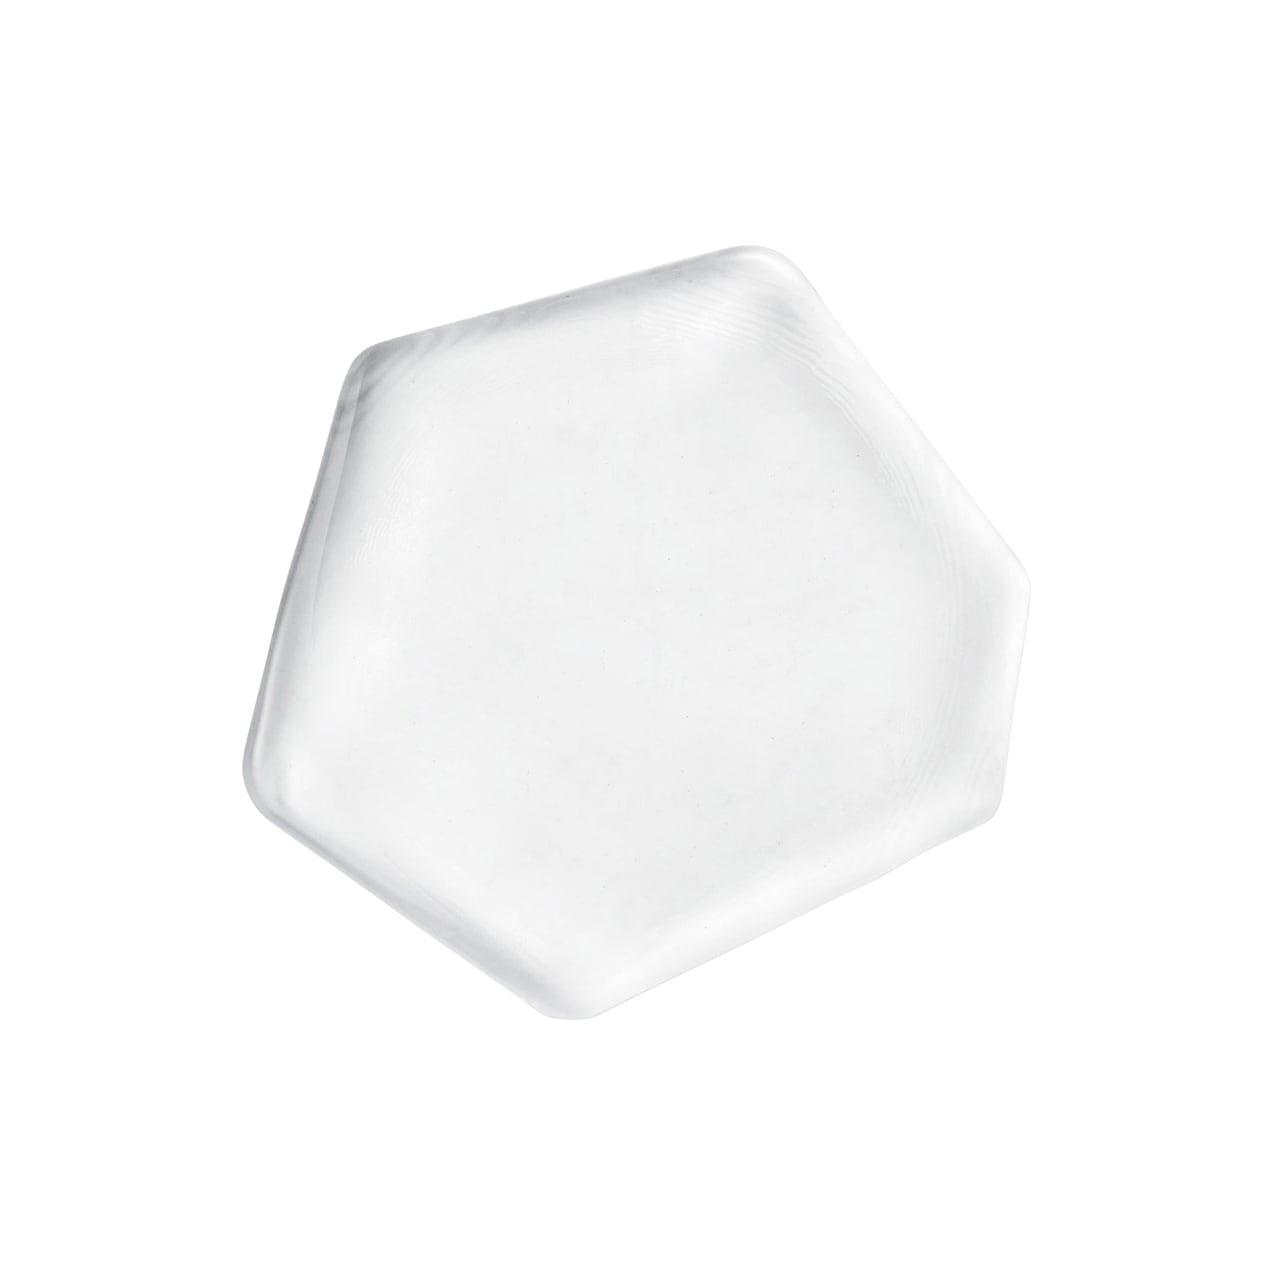 吉沼硝子 ガラス プレート 皿 変形 六角形 多角形 約12cm クリア 透明 YSM-YD1-PLTCR